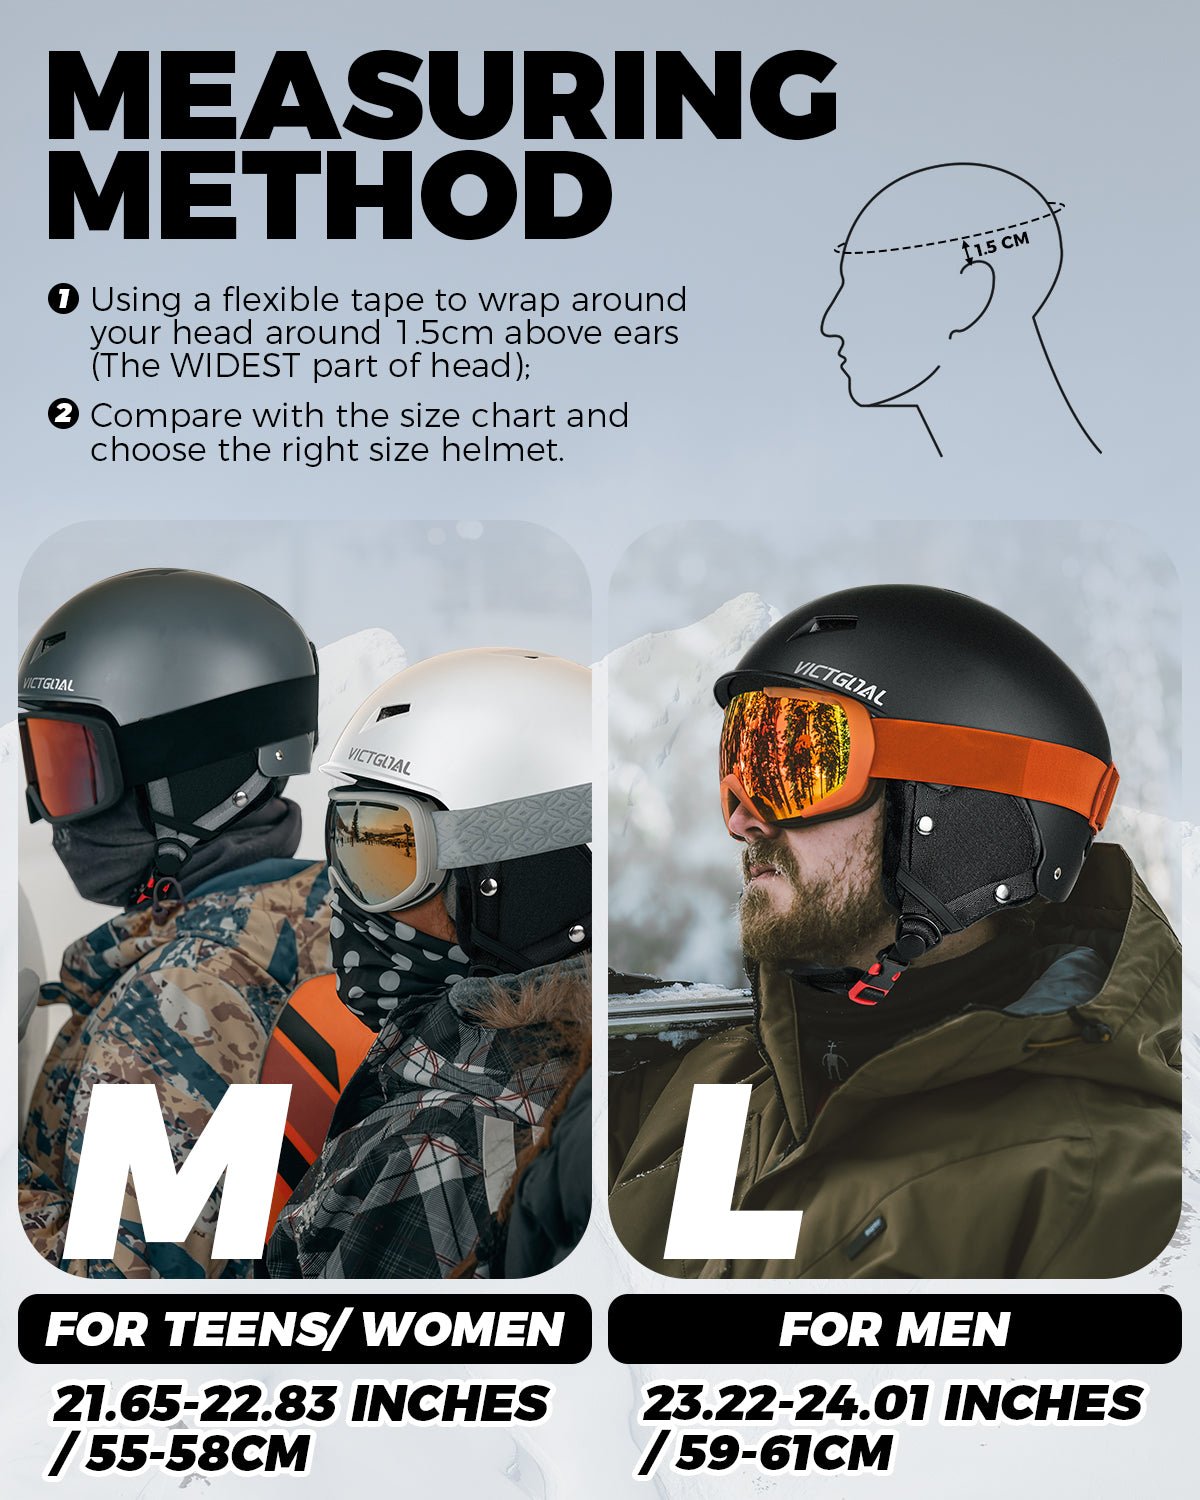 Ski Helmet & Snowboard Helmet for Men, Women & Youth Adults Helmets VICTGOAL adultshelmets helmets kidshelmets